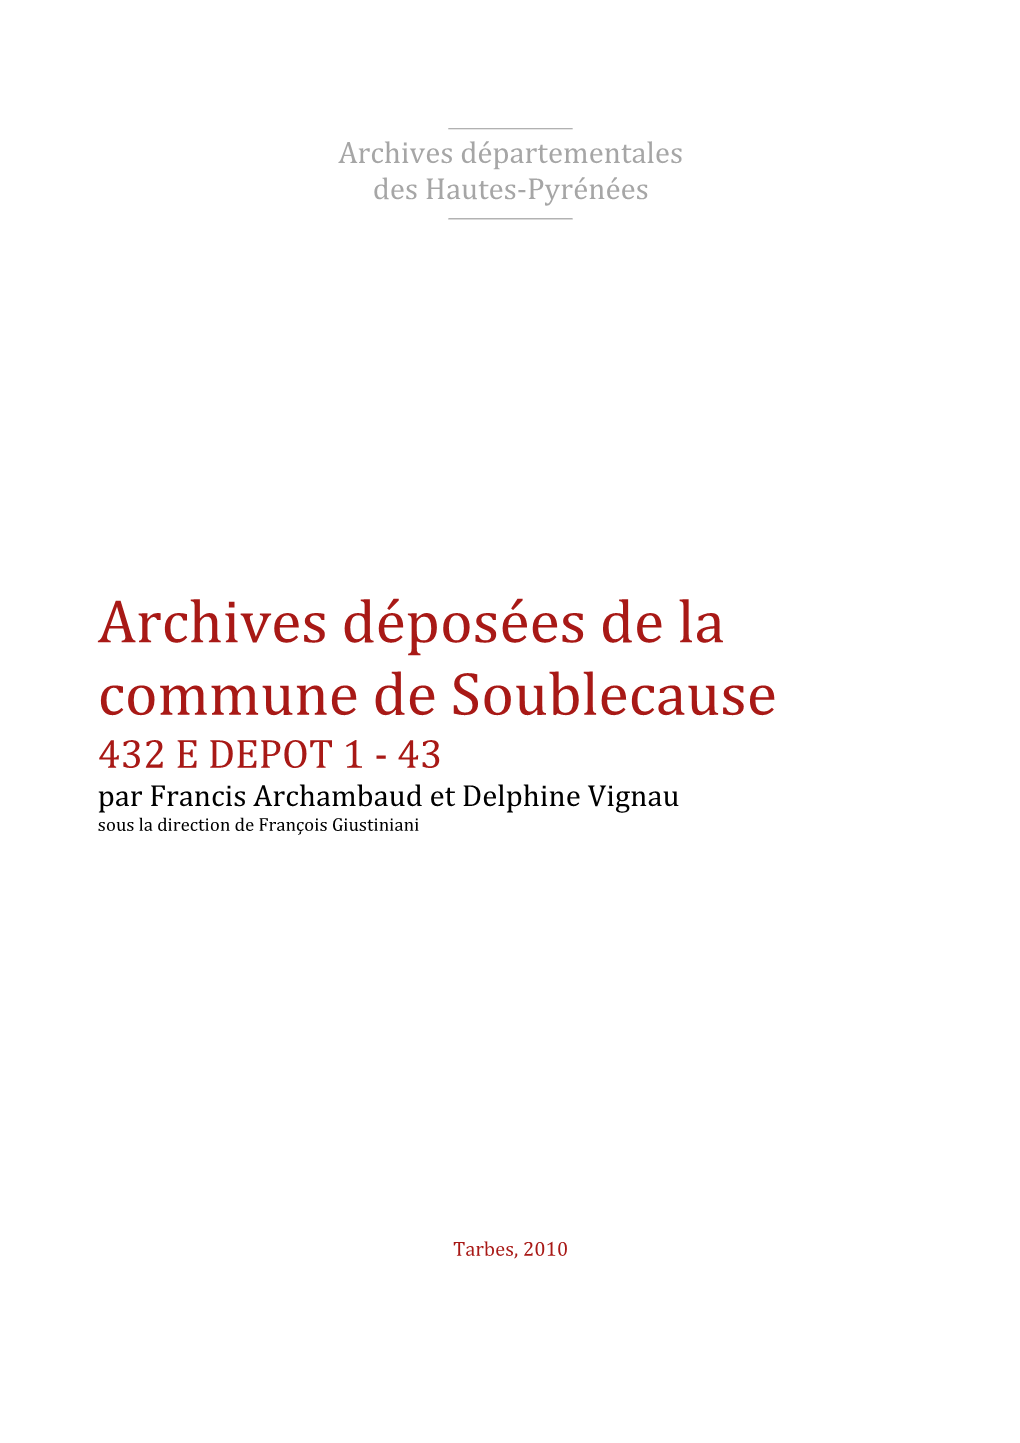 Archives Déposées De La Commune De Soublecause 432 E DEPOT 1 - 43 Par Francis Archambaud Et Delphine Vignau Sous La Direction De François Giustiniani